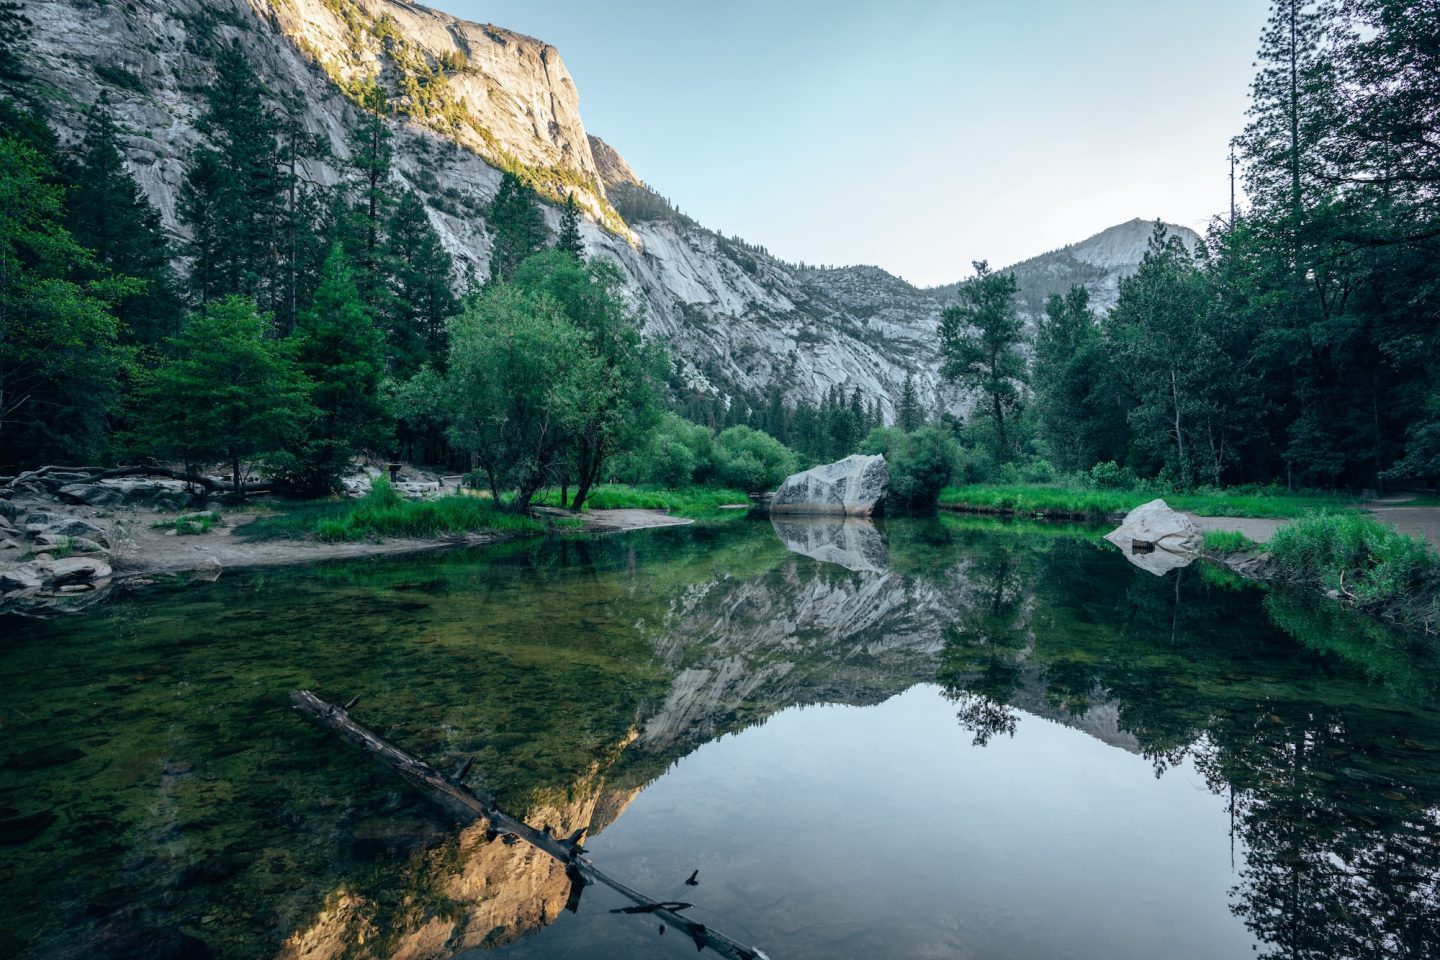 Mirror Lake - Yosemite National Park